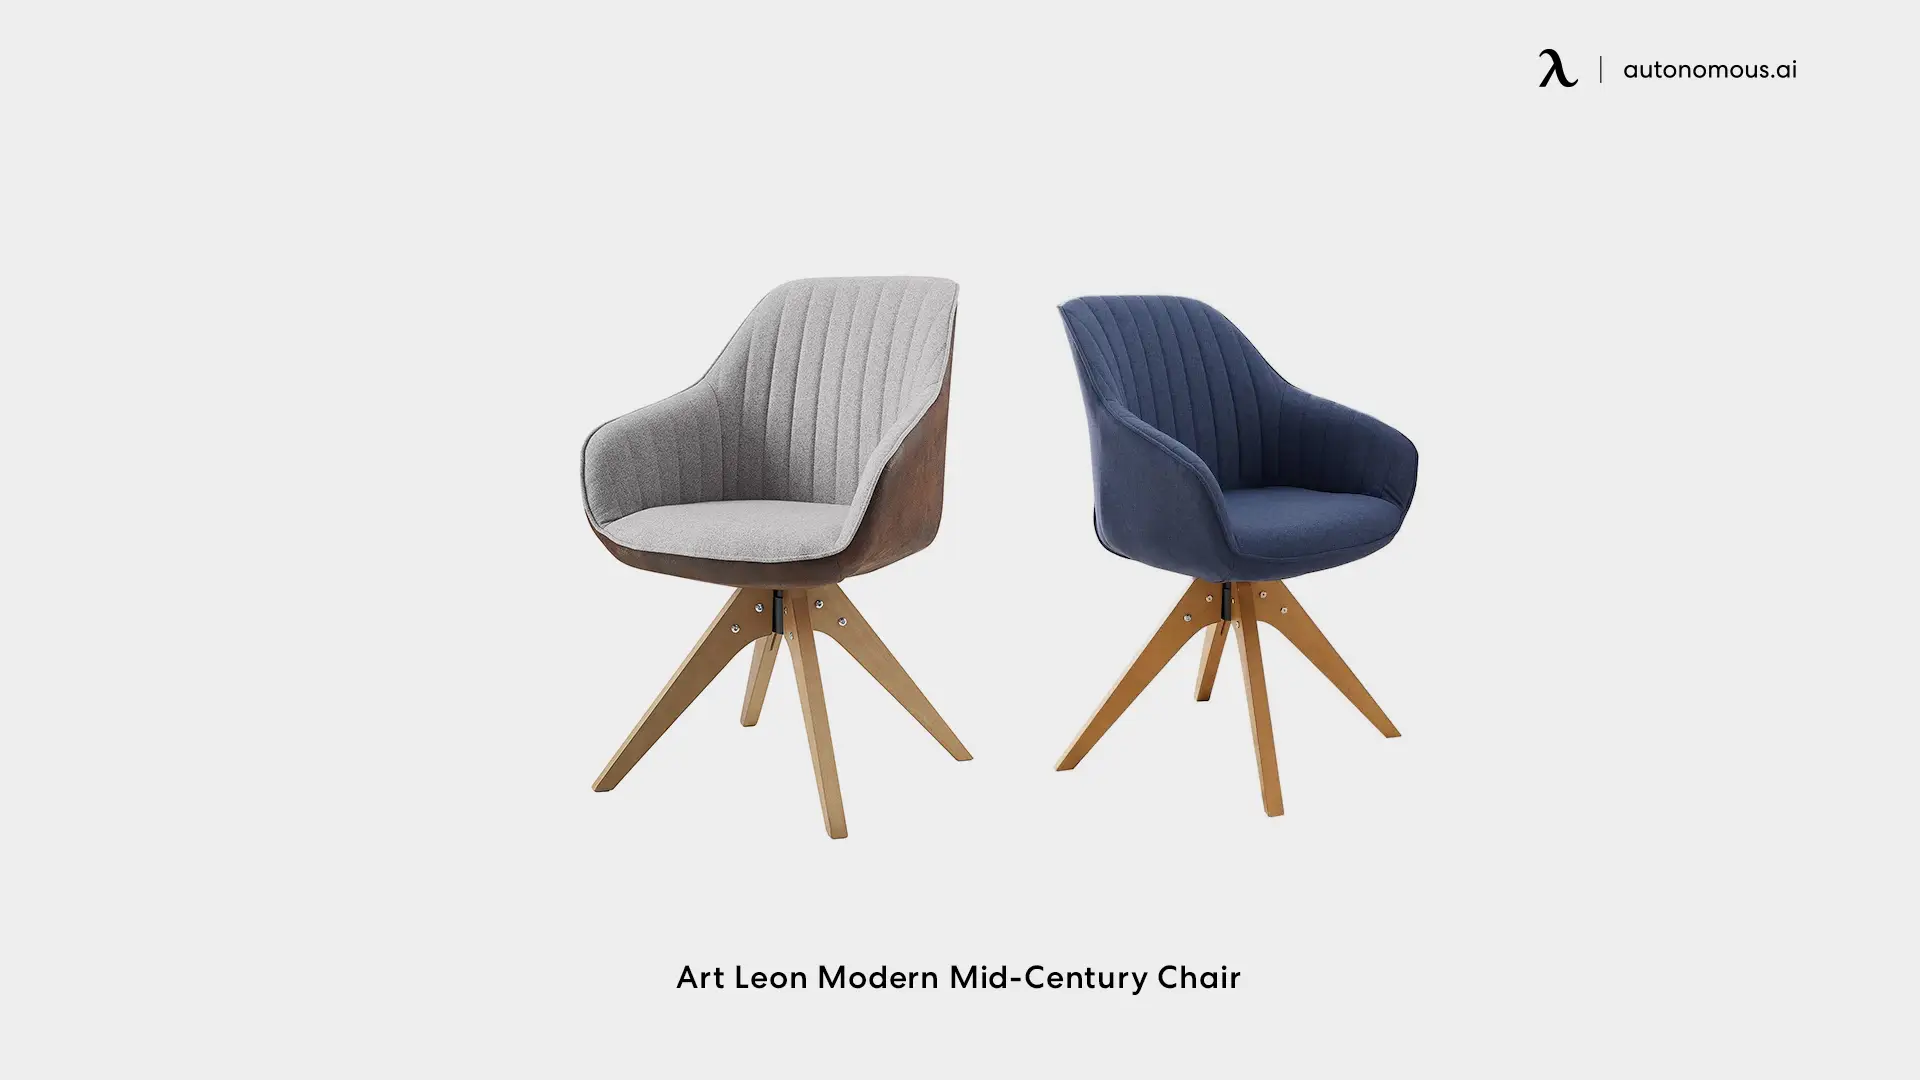 Art Leon Modern Mid-Century Chair